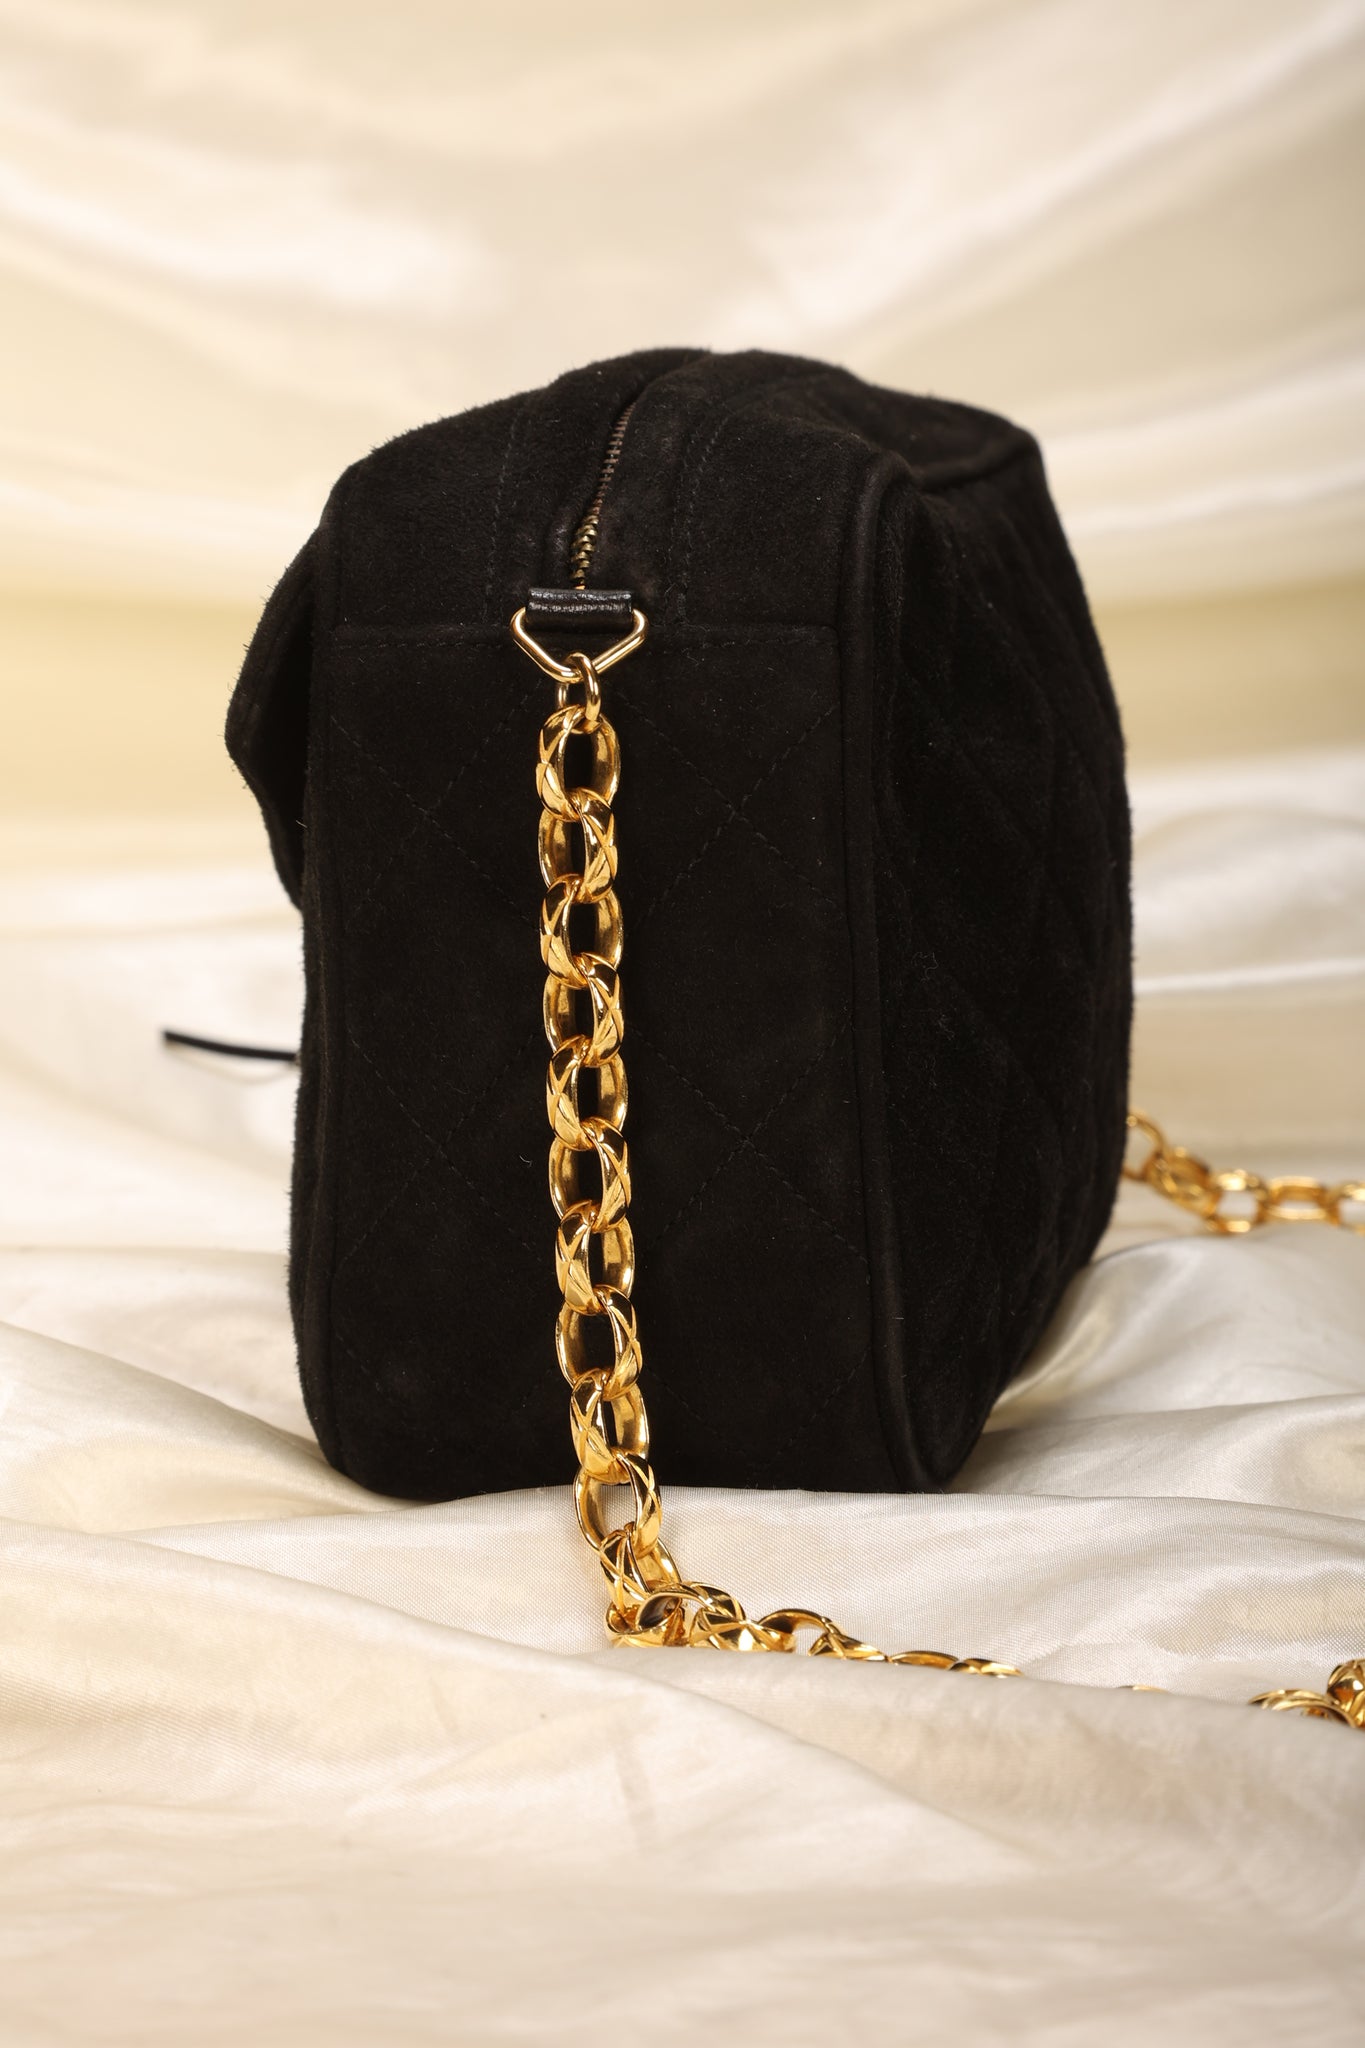 Rare Chanel Suede Bijoux Camera Bag – SFN